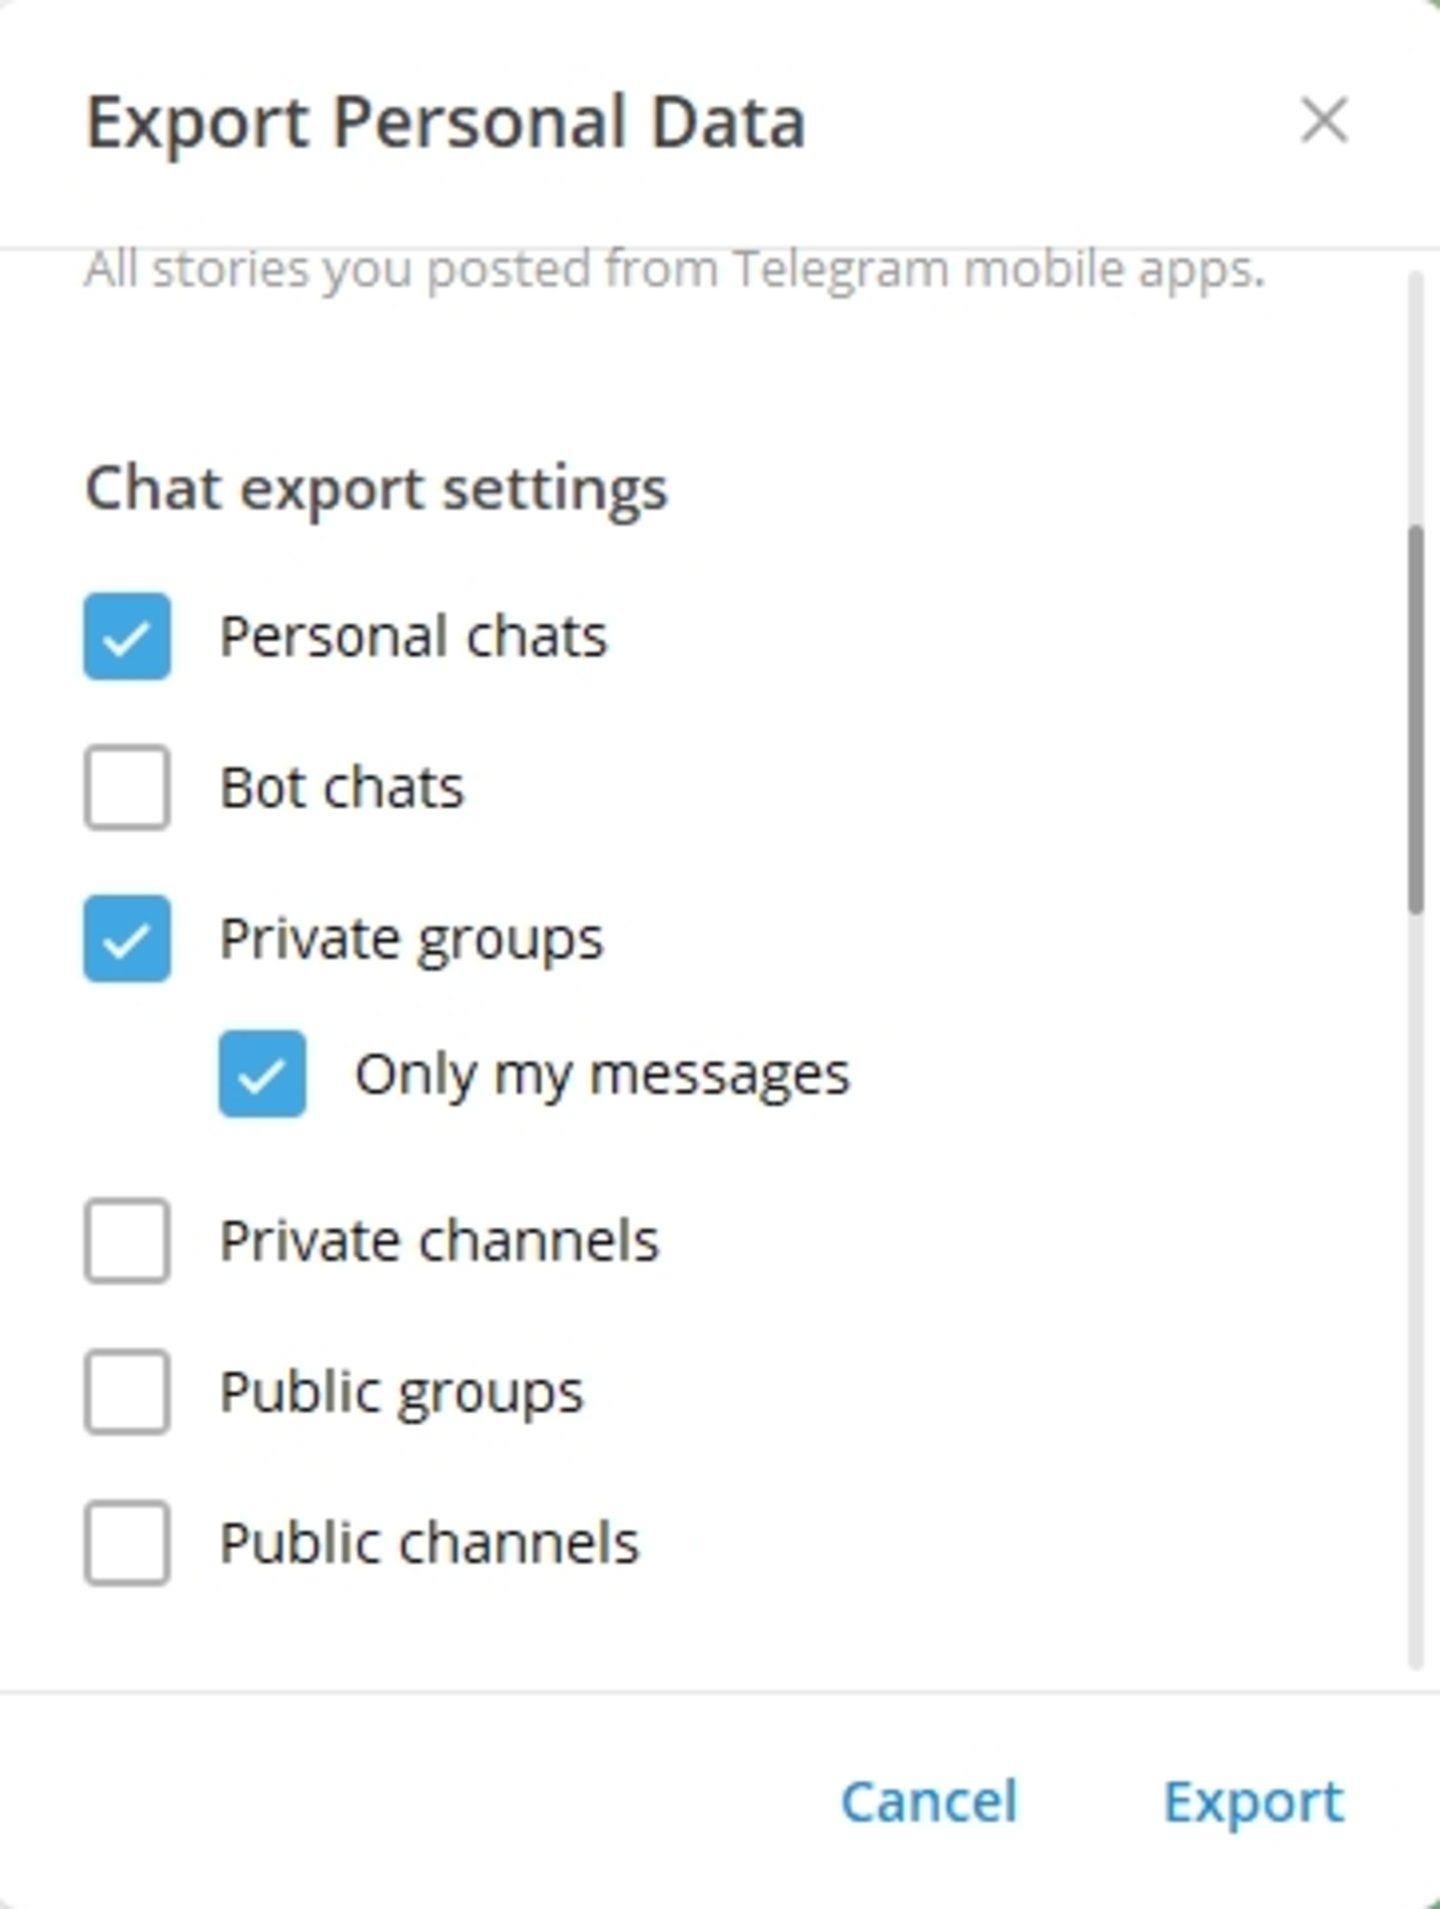 Cómo recuperar mensajes borrados en Telegram paso a paso